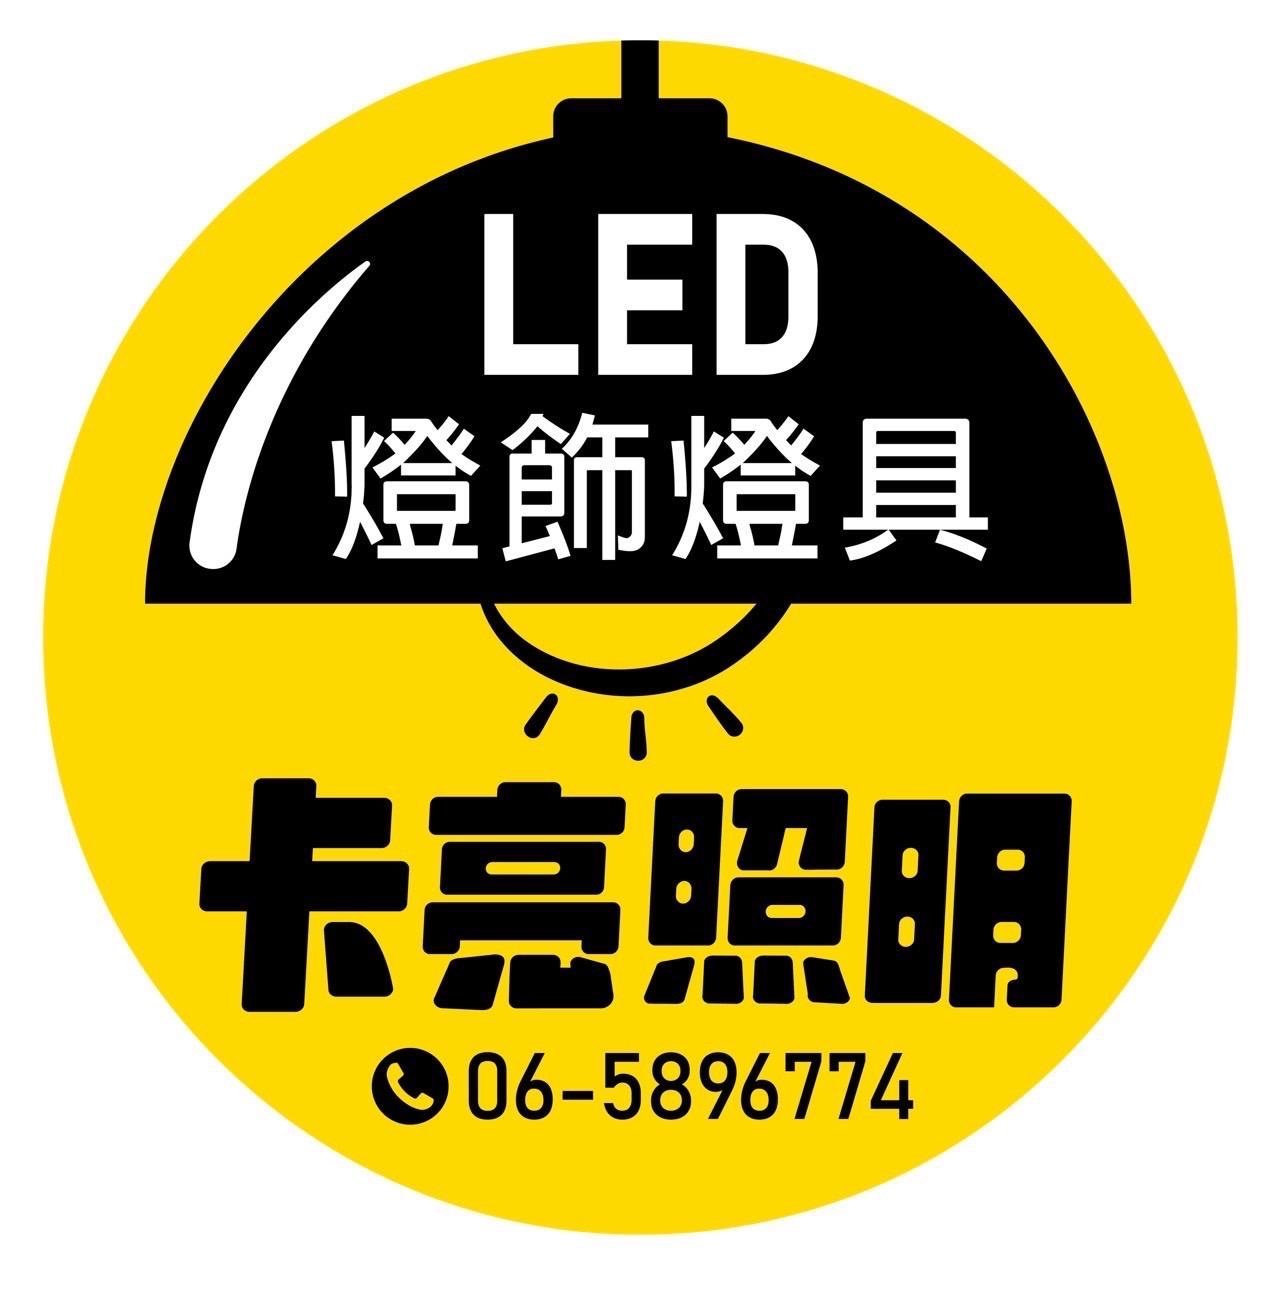 卡亮照明LED專賣店/吸頂燈/崁燈/水族燈/壁燈/平板燈/輕鋼架燈